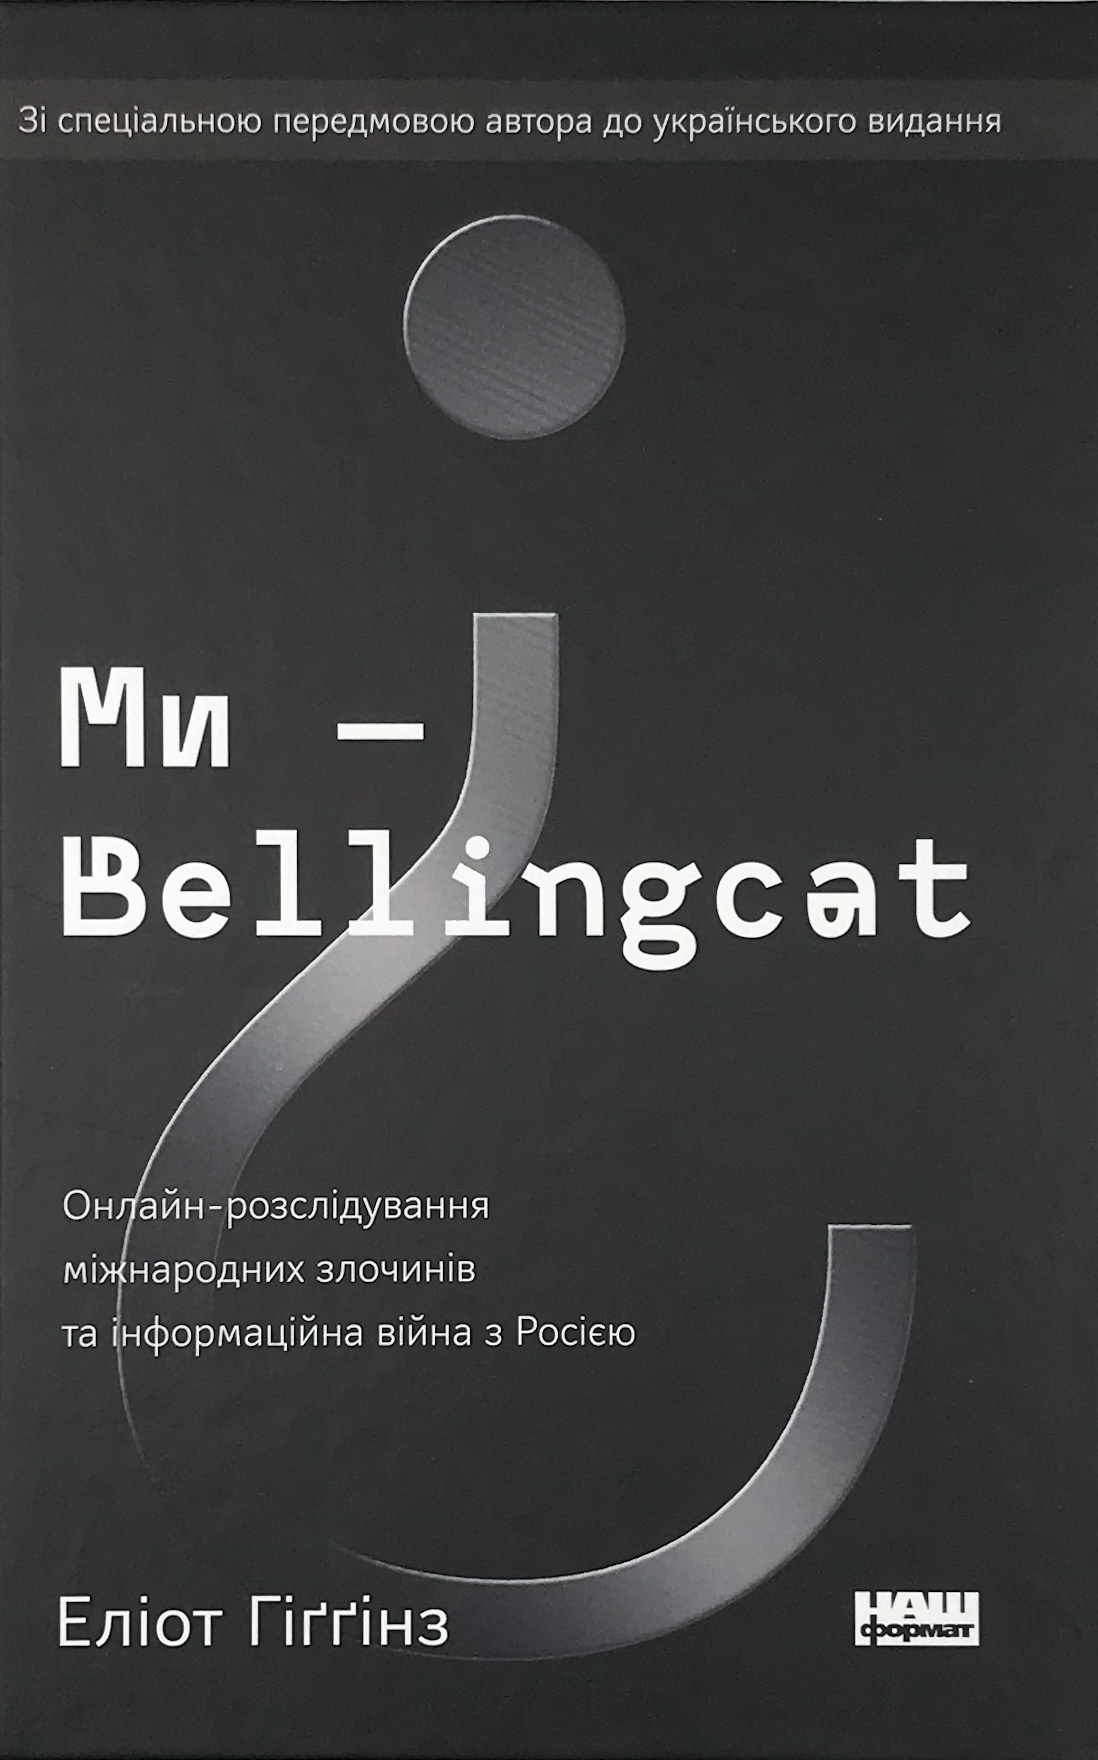 Ми — Bellingcat. Онлайн-розслідування міжнародних злочинів та інформаційна війна з Росією. Автор — Элиот Хиггинз. 